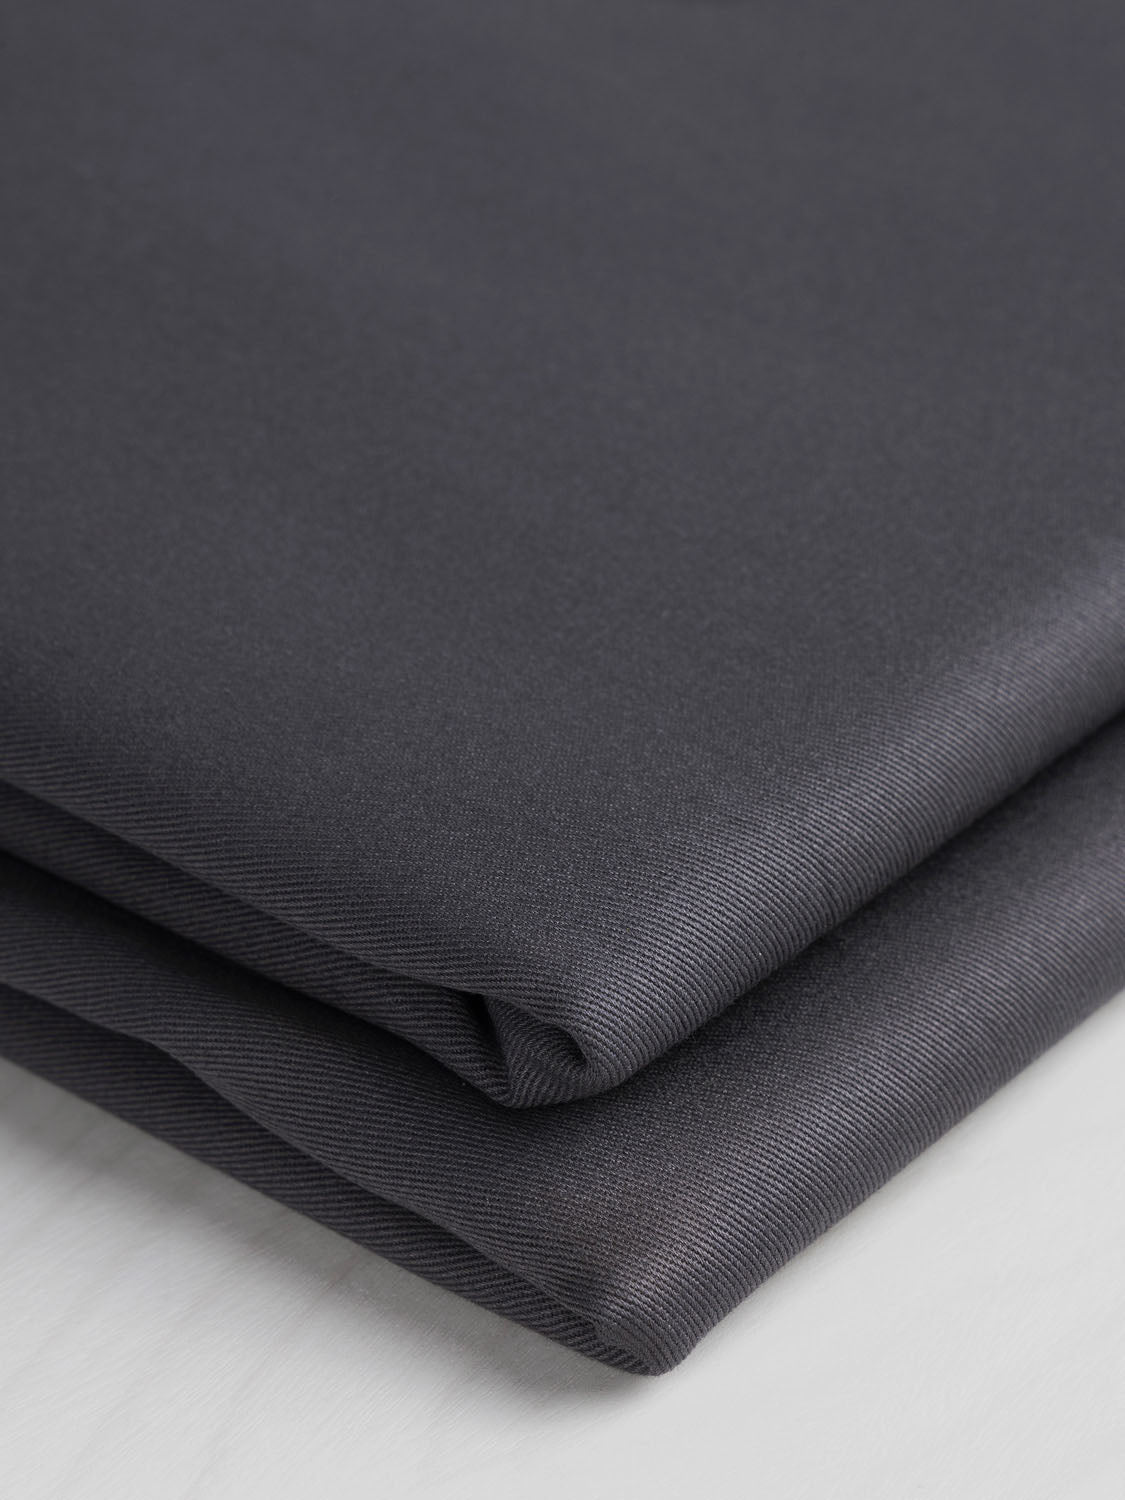 Midweight  Organic Cotton Twill - Charcoal | Core Fabrics